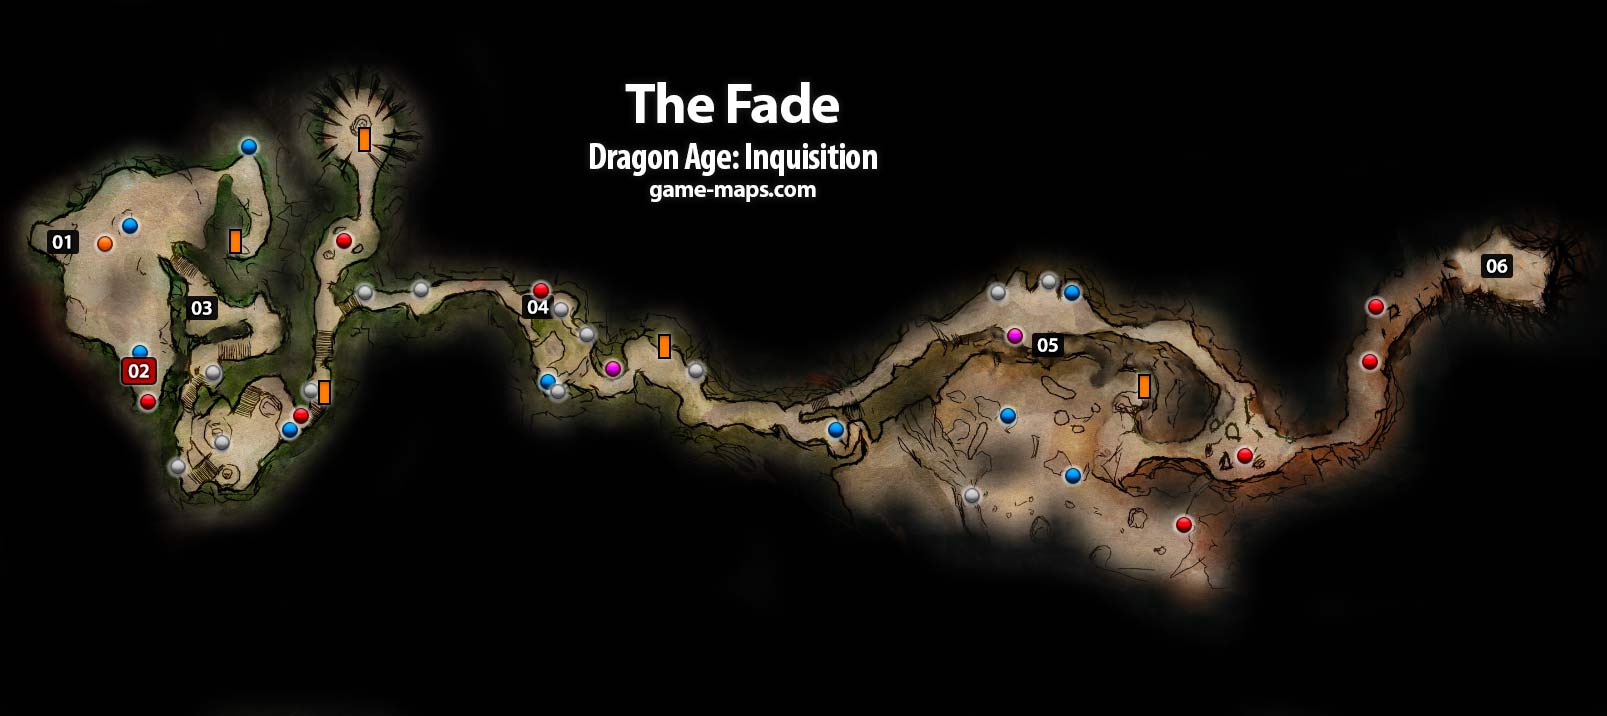 The Fade Dragon Age: Inquisition